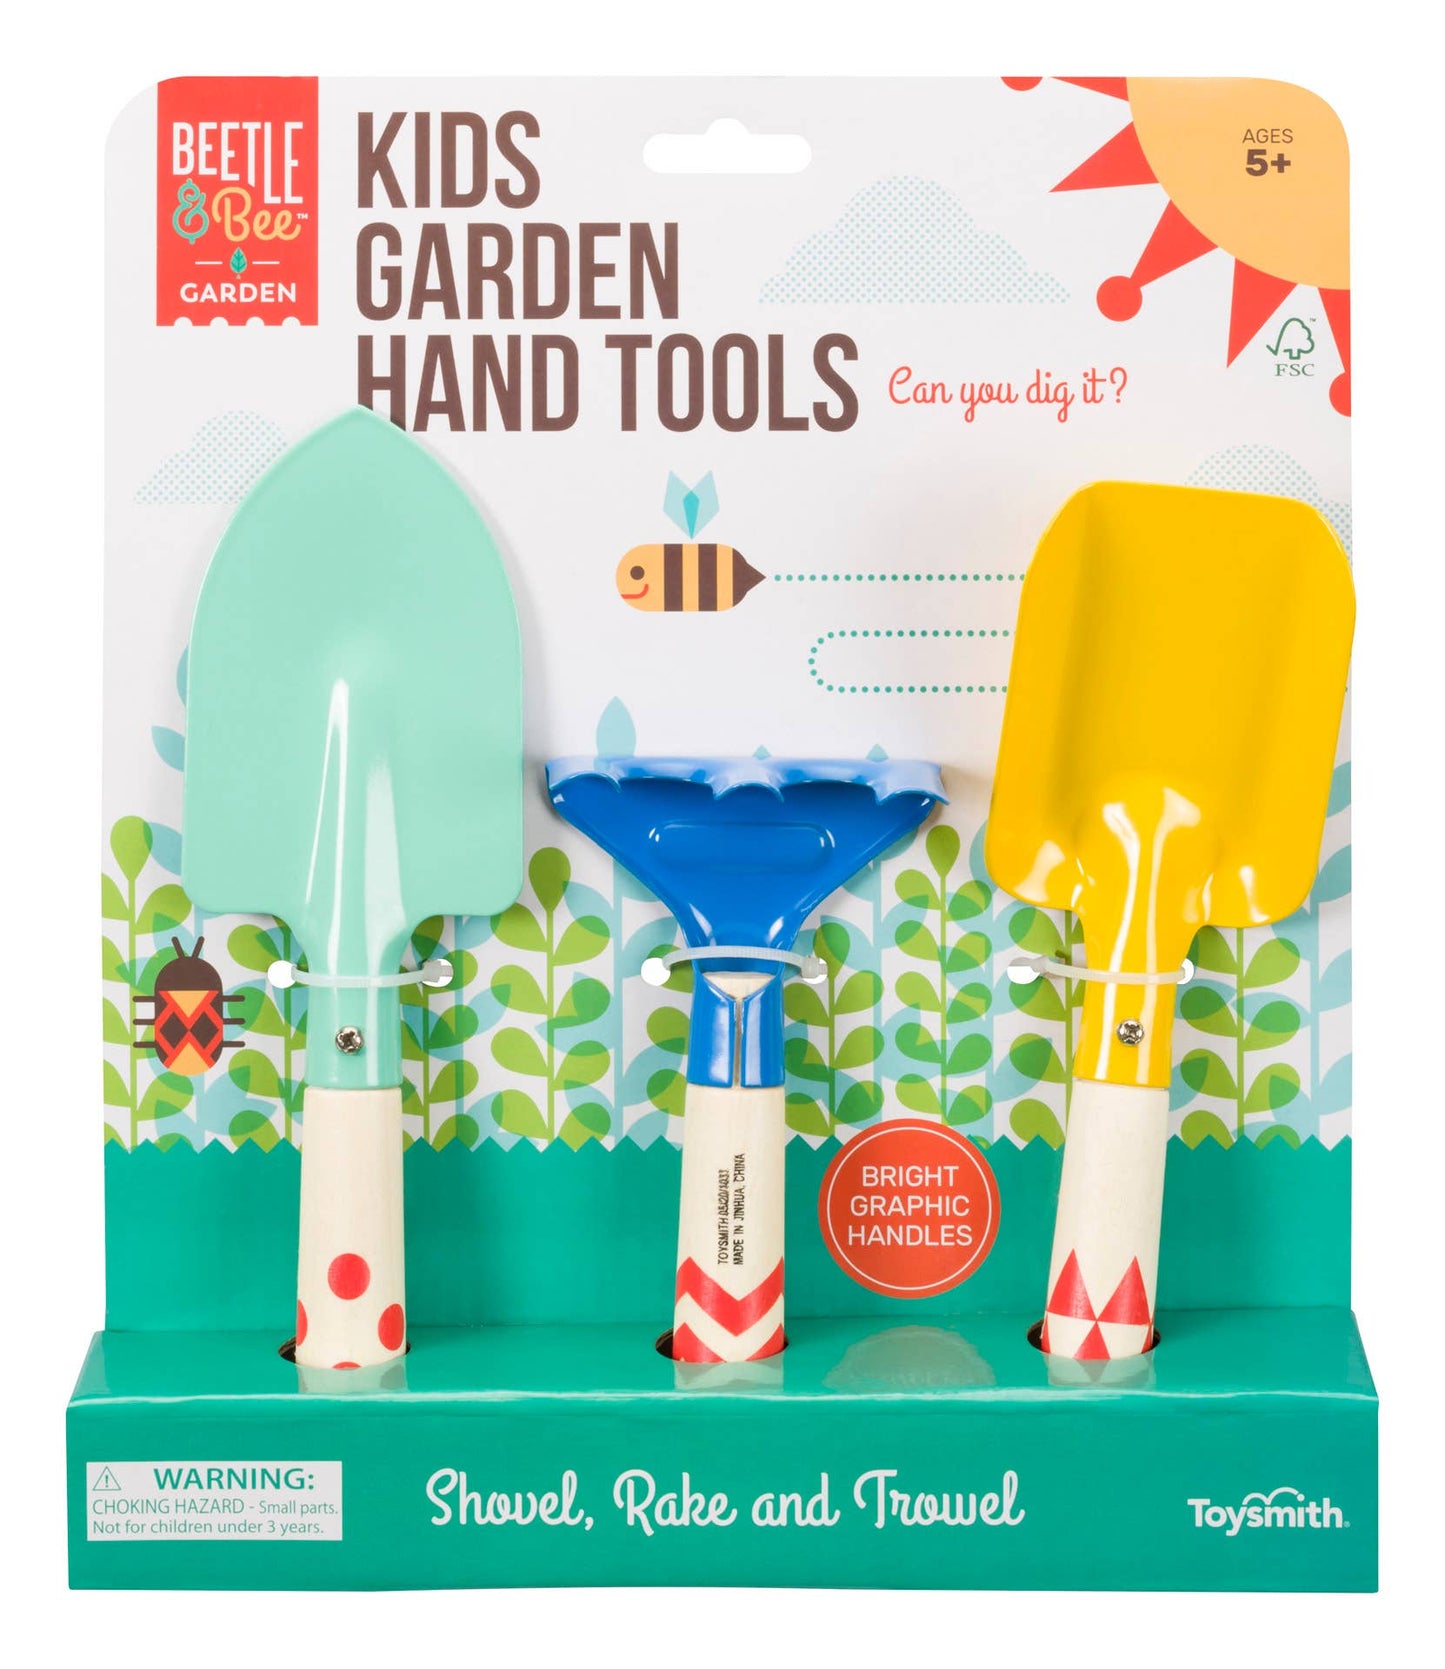 Beetle & Bee Kids Garden Hand Tools